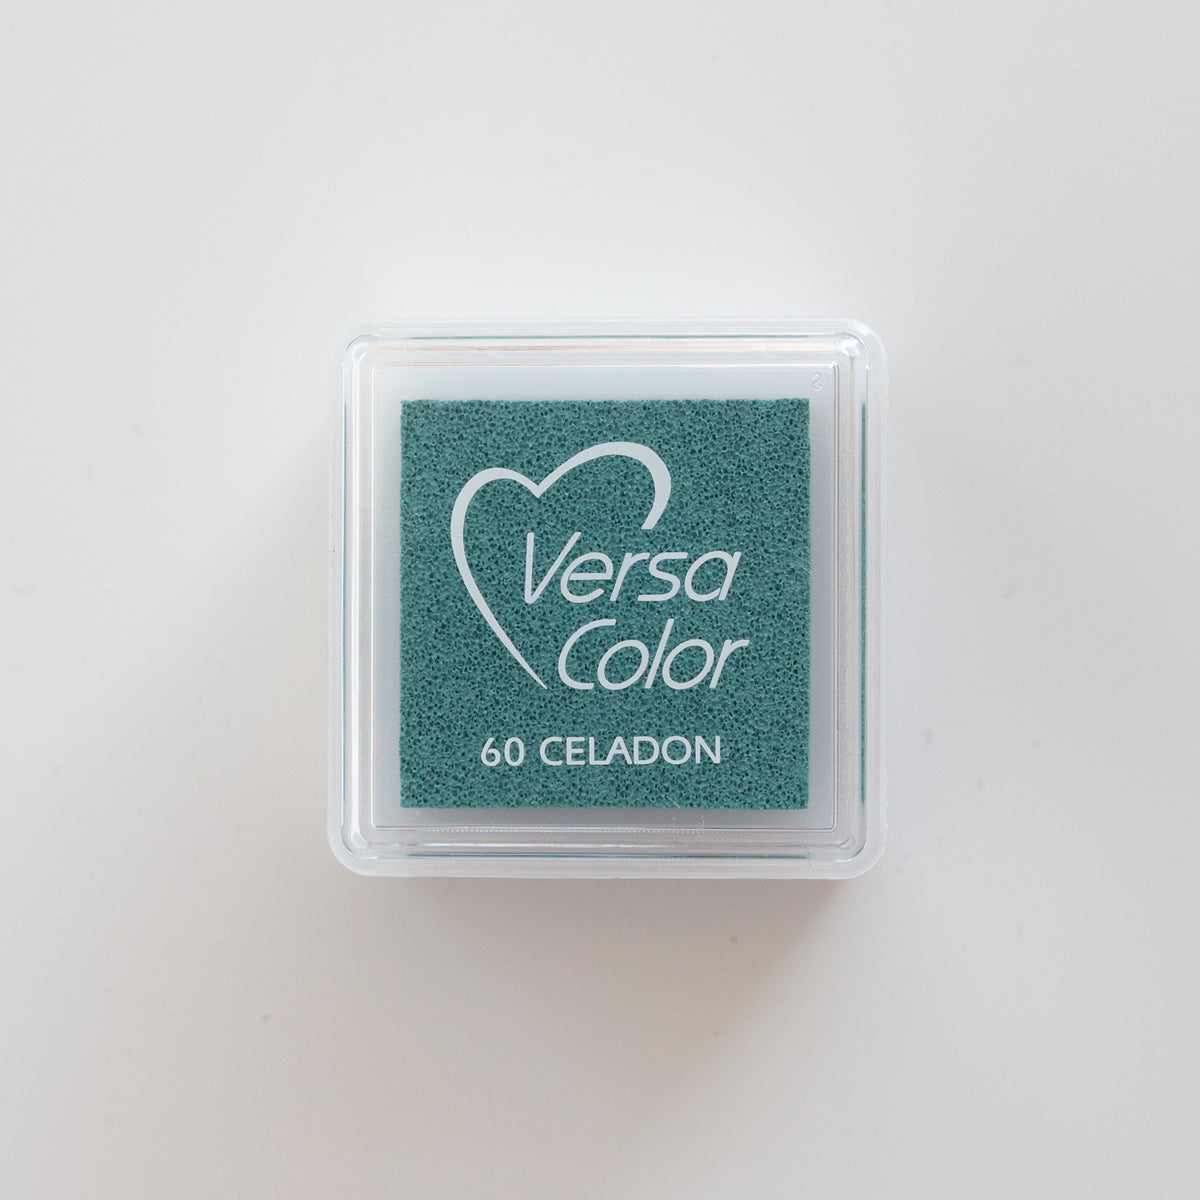 VersaColor 1" 60 Celadon